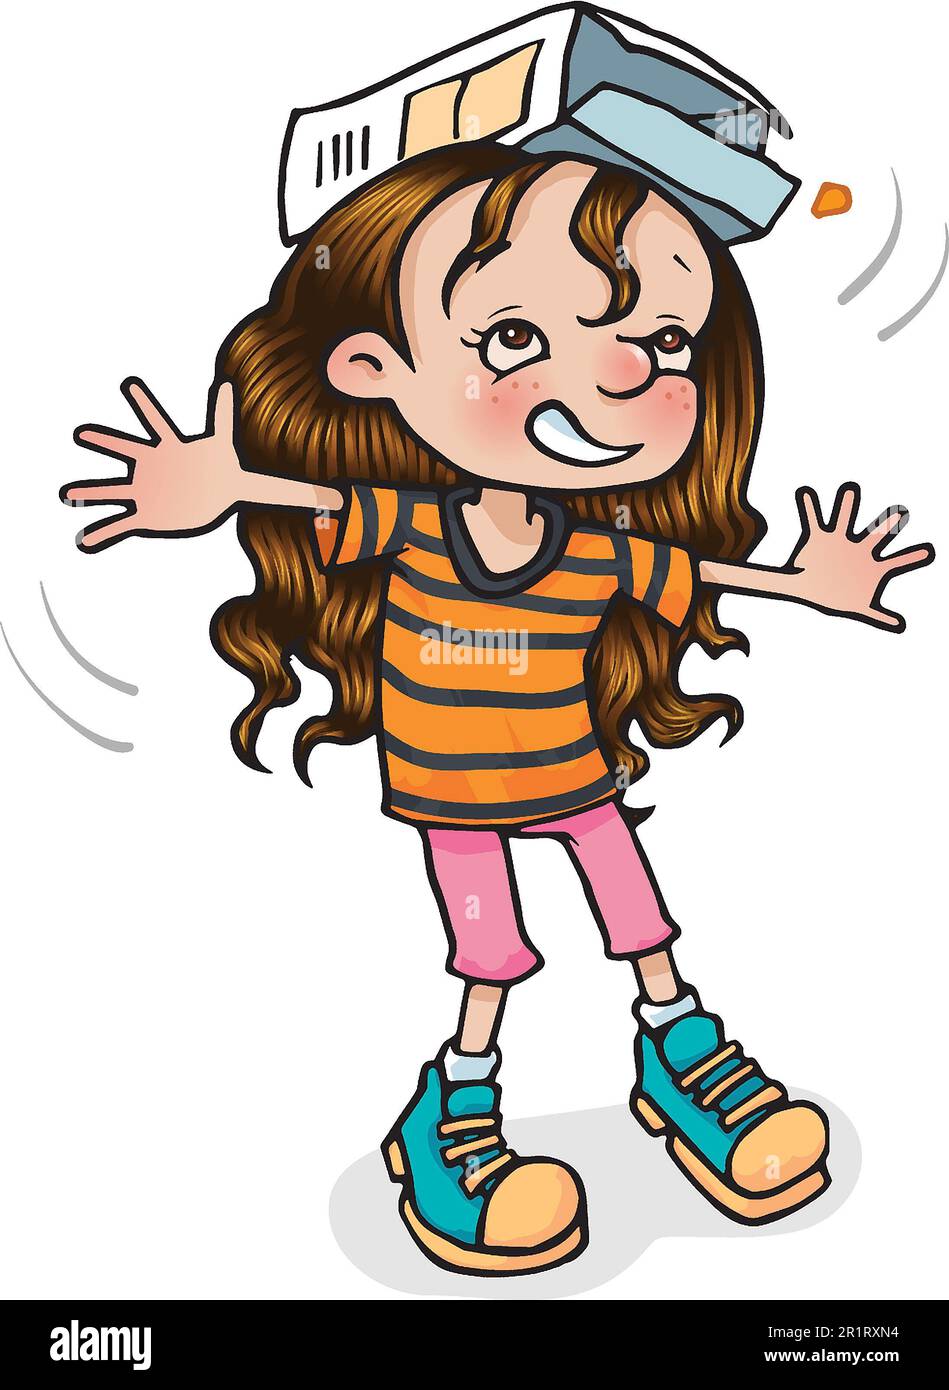 Ilustración de dibujos animados de arte de niña de 5 a 7 años, equilibrando una caja en su cabeza, aprendiendo a través del juego, el movimiento, la agilidad, la coordinación, control de la carrocería. Foto de stock